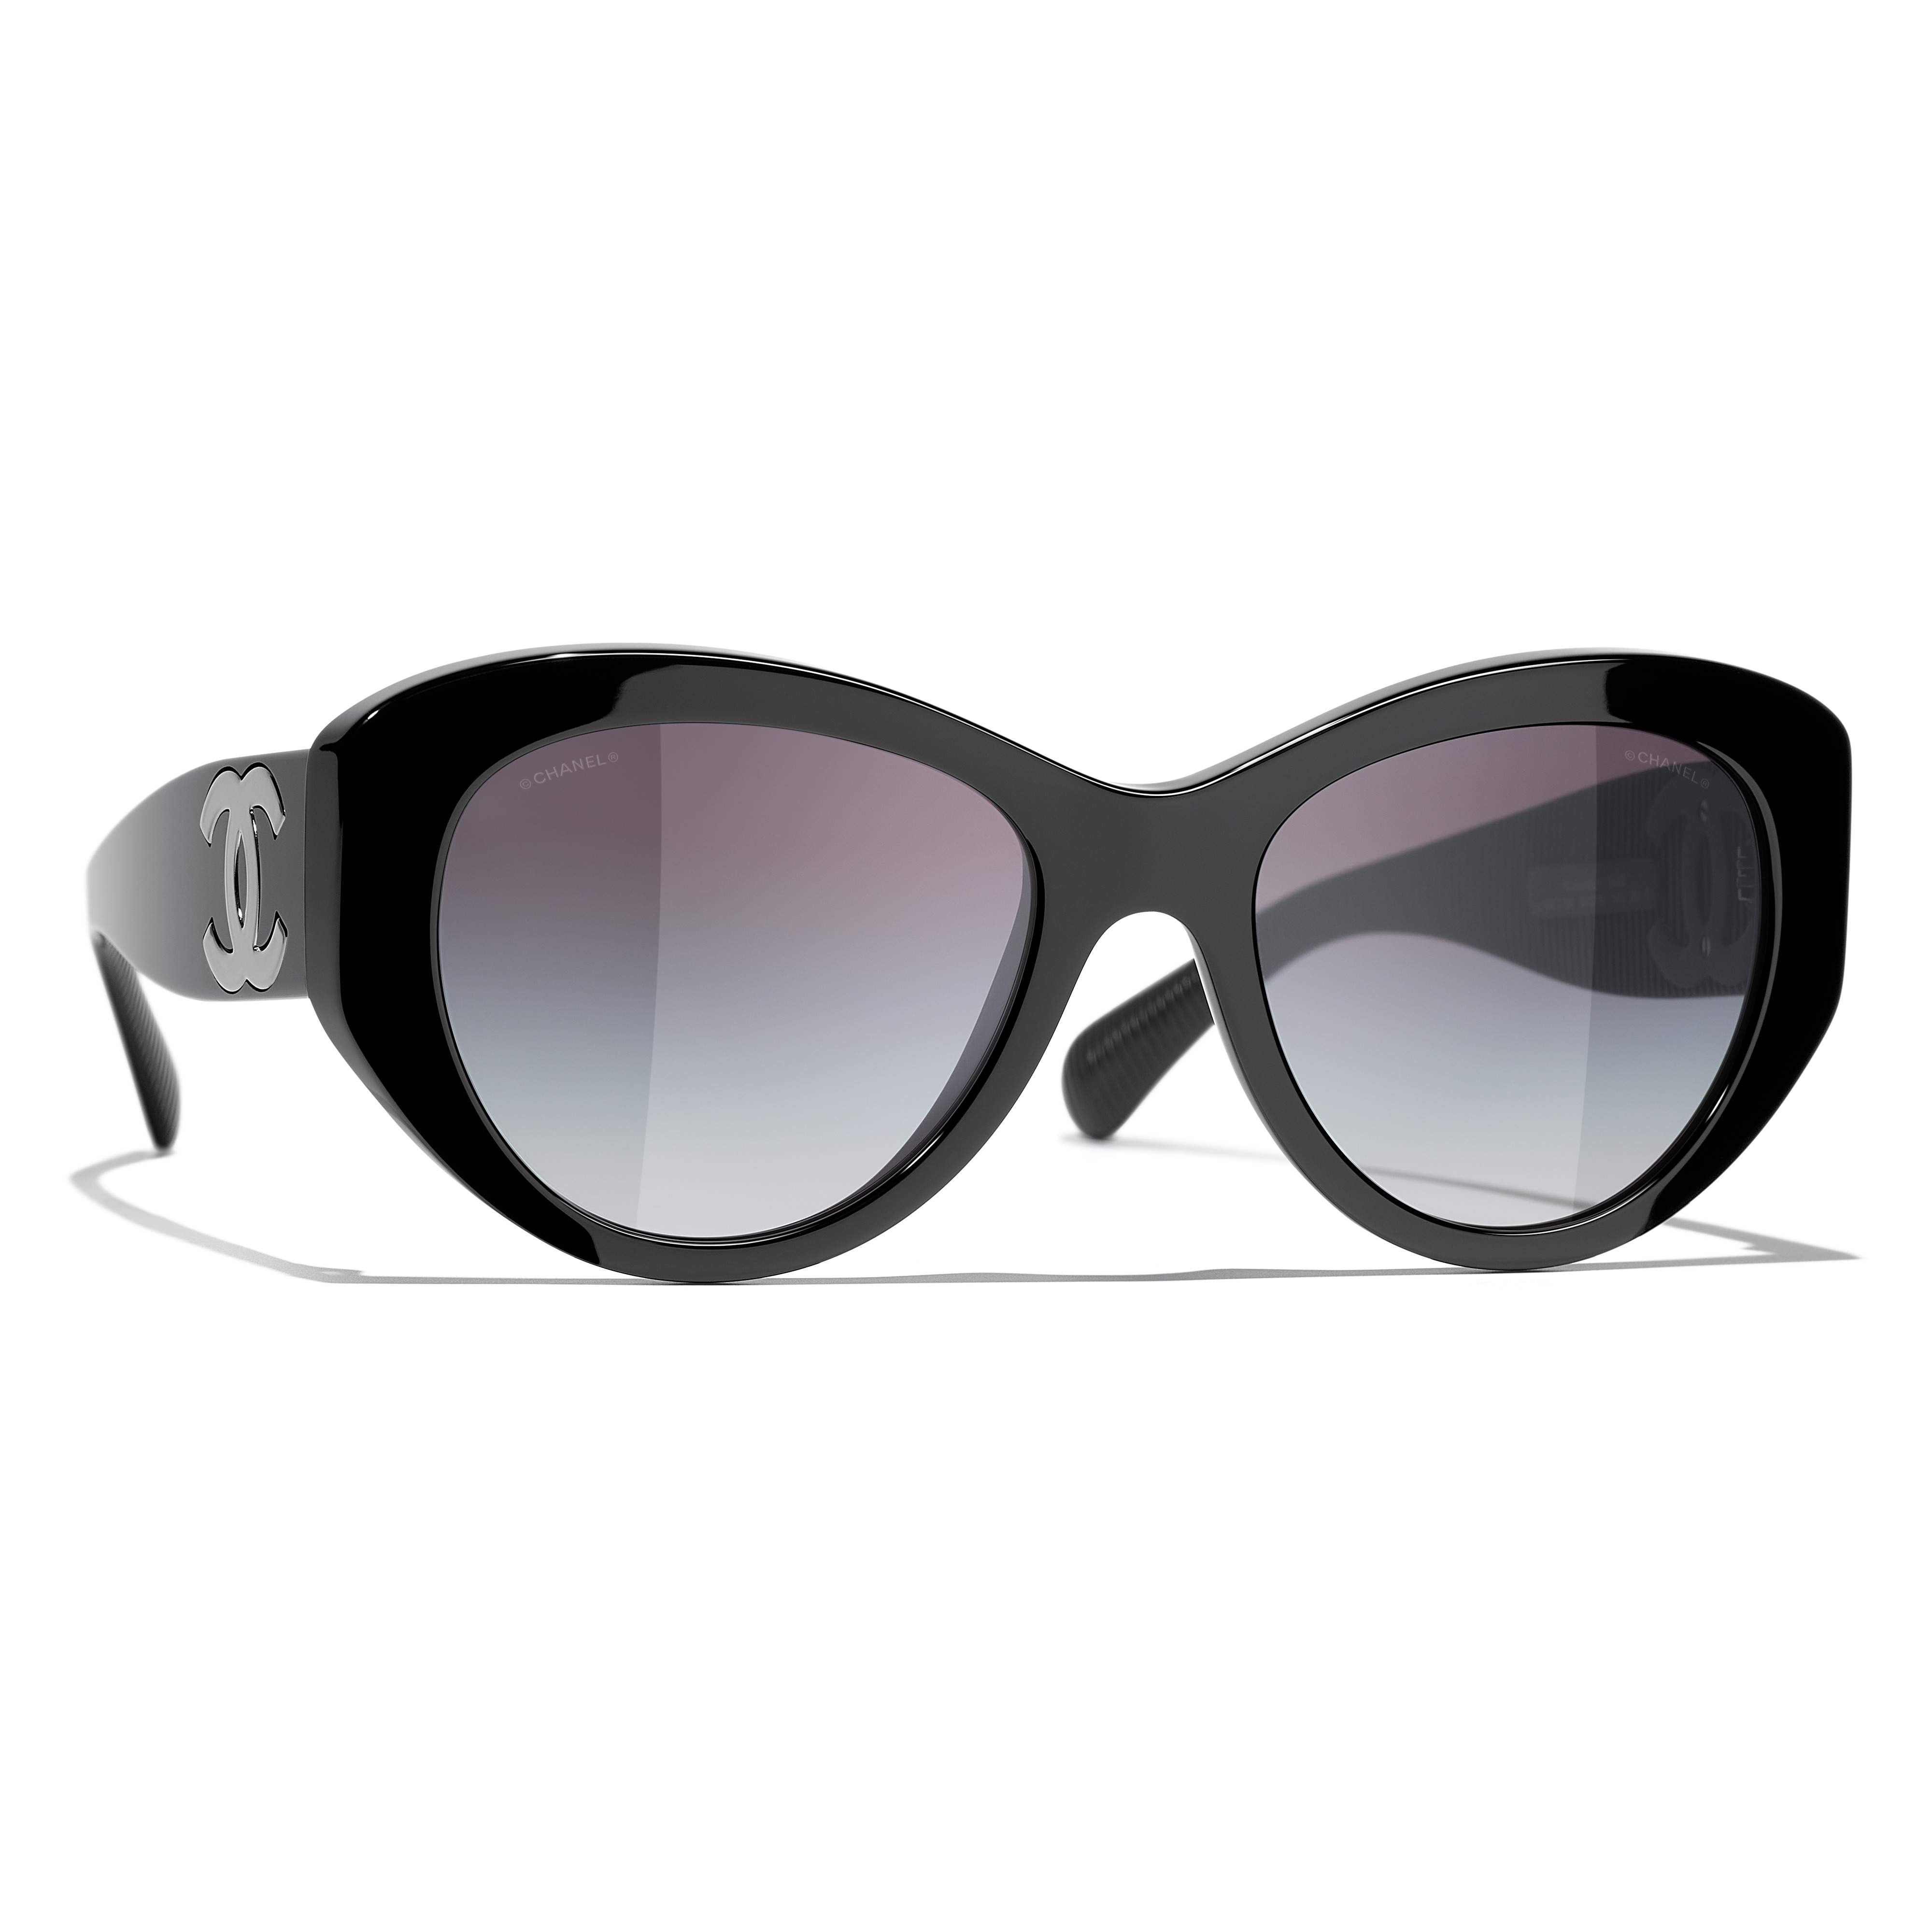 Sunglasses CHANEL CH5492 1047/S6 54-19 Black in stock, Price 266,67 €